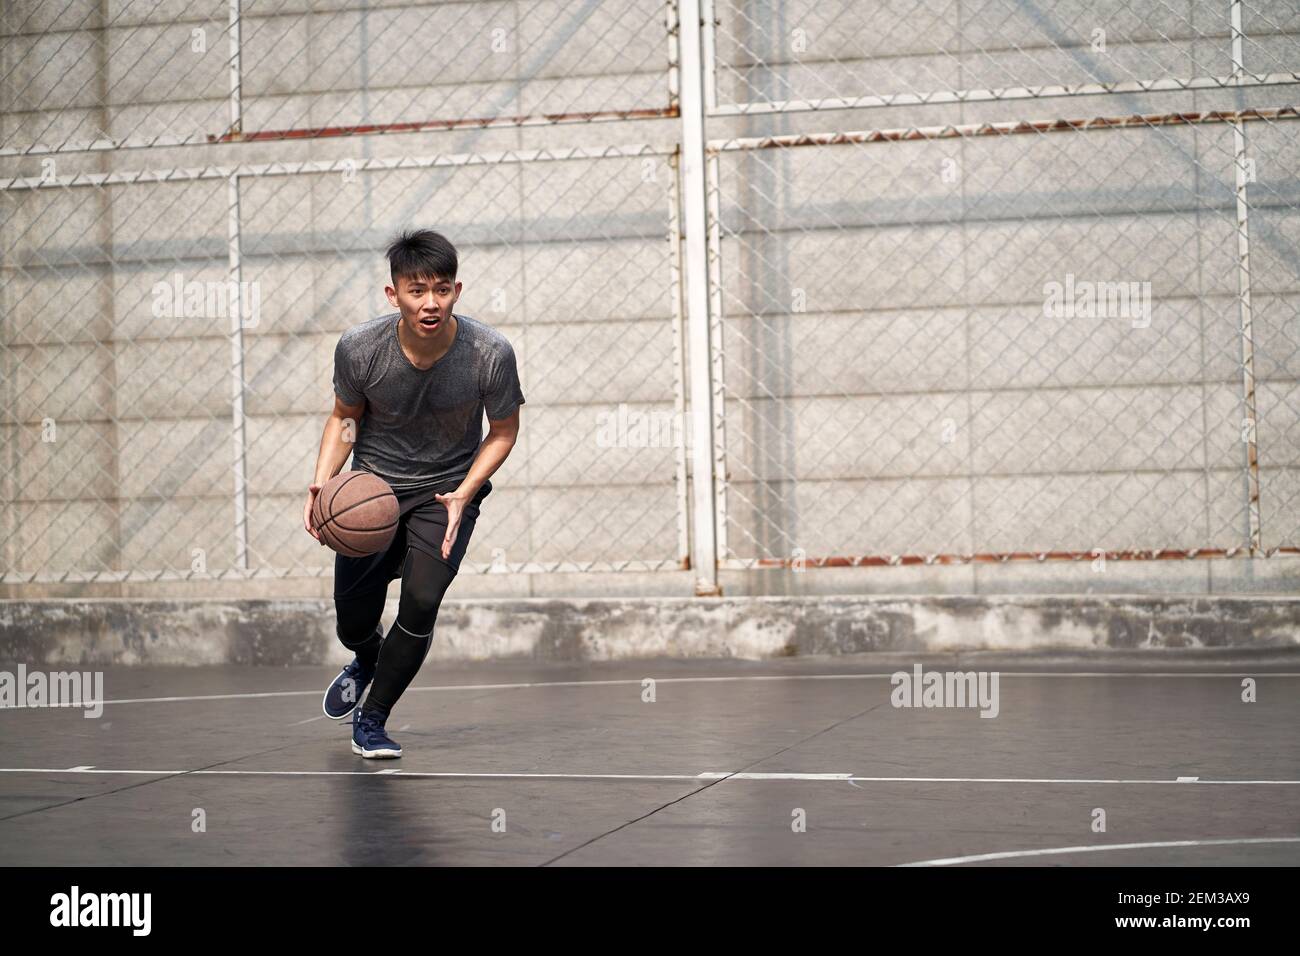 un jeune homme asiatique essaie de jouer un dunk sur un terrain extérieur Banque D'Images